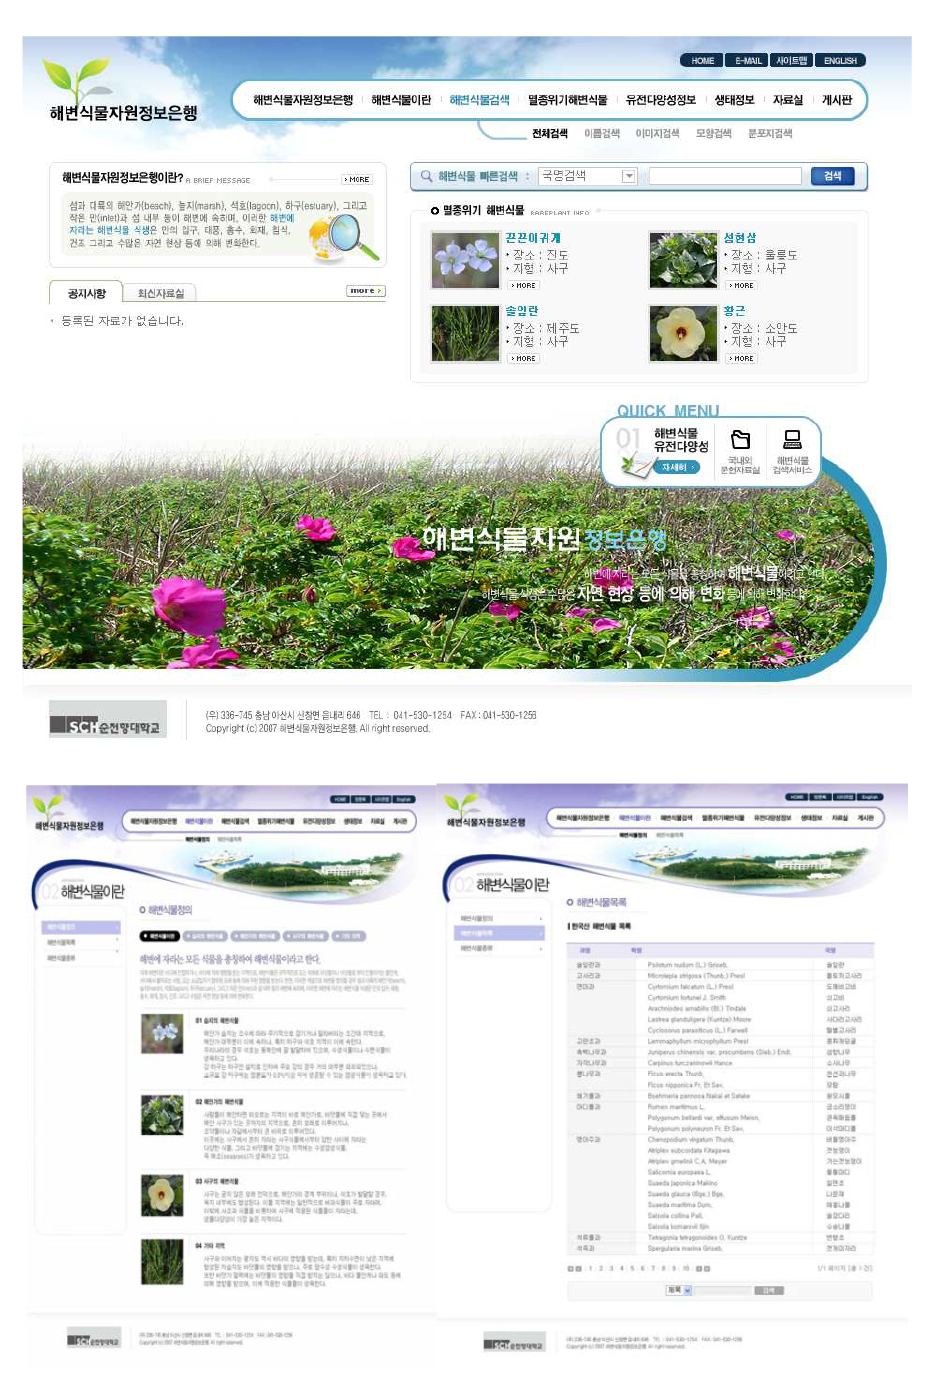 해변식물정보은행 홈페이지 메인 페이지와 해변식물 관련 페이지들.